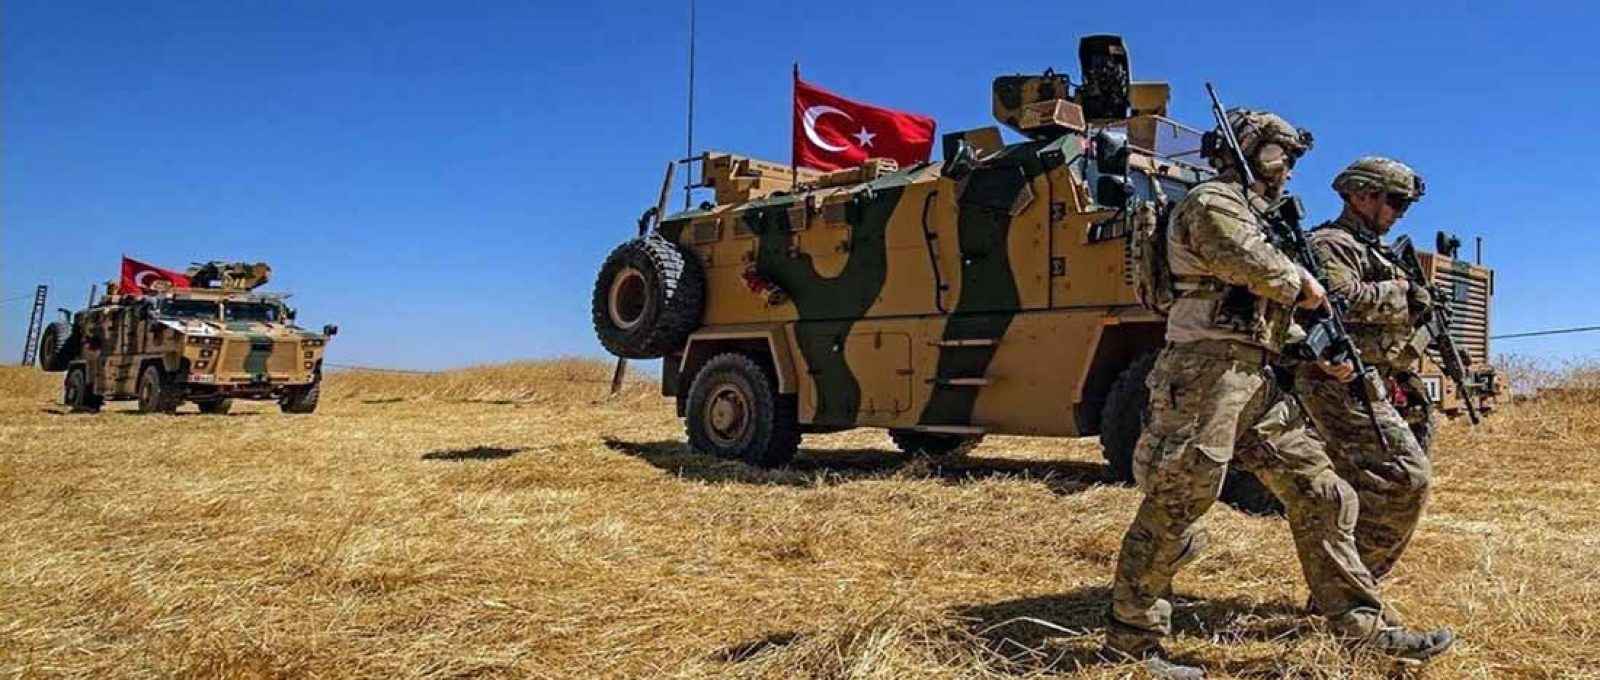 Soldados americanos ao lado de veículo militar turco nos arredores de Tel Abyad, na Síria, perto da fronteira com a Turquia, em setembro de 2019 (Foto: Delil Souleiman/Agência France Presse/Getty Images).